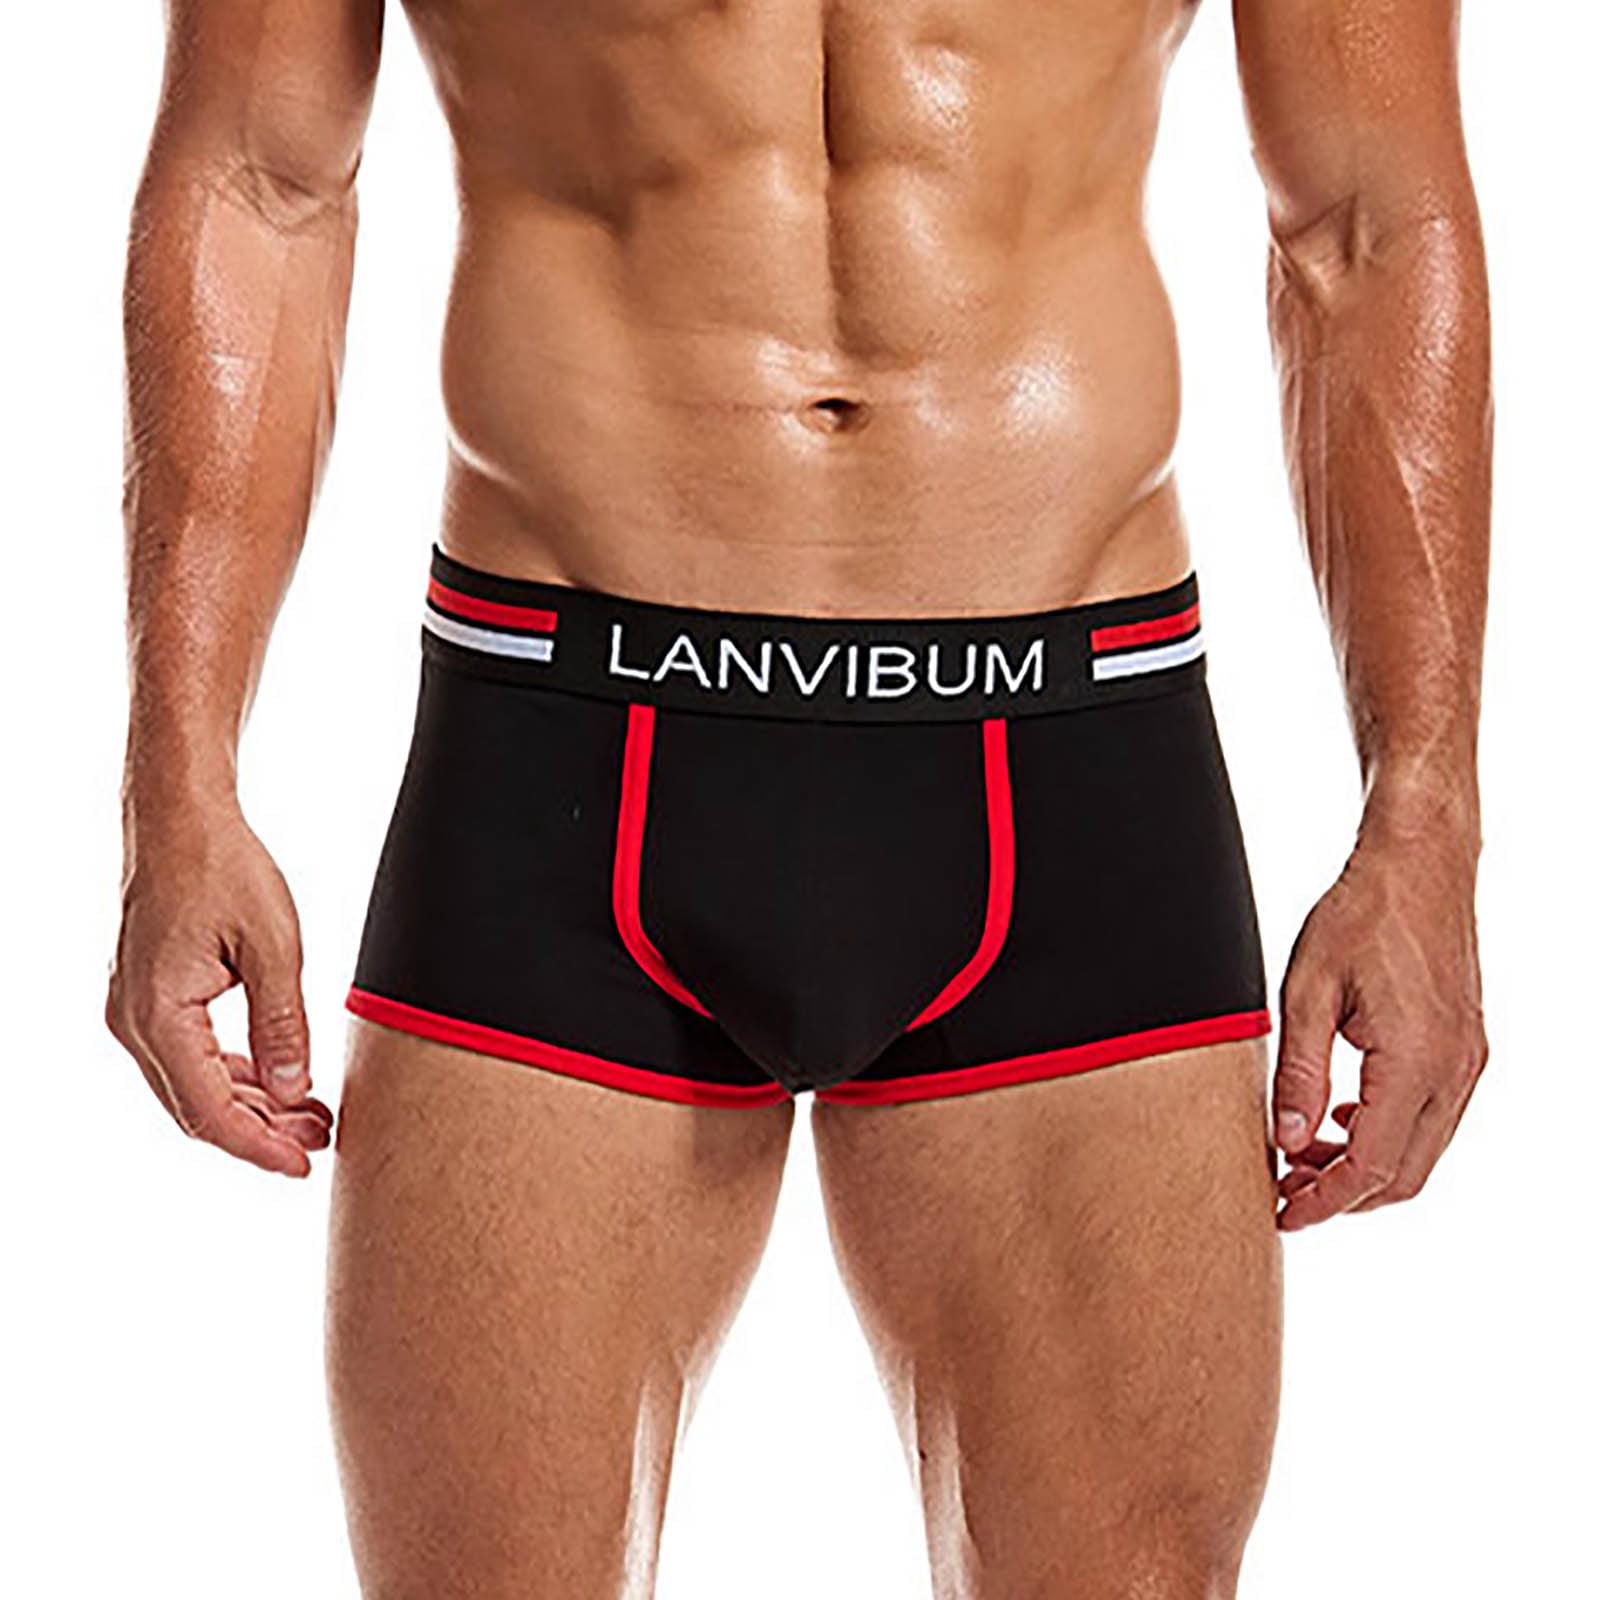 Men's Sexy Underwear Bulge Pouch Underpants Low Rise Trunks Short